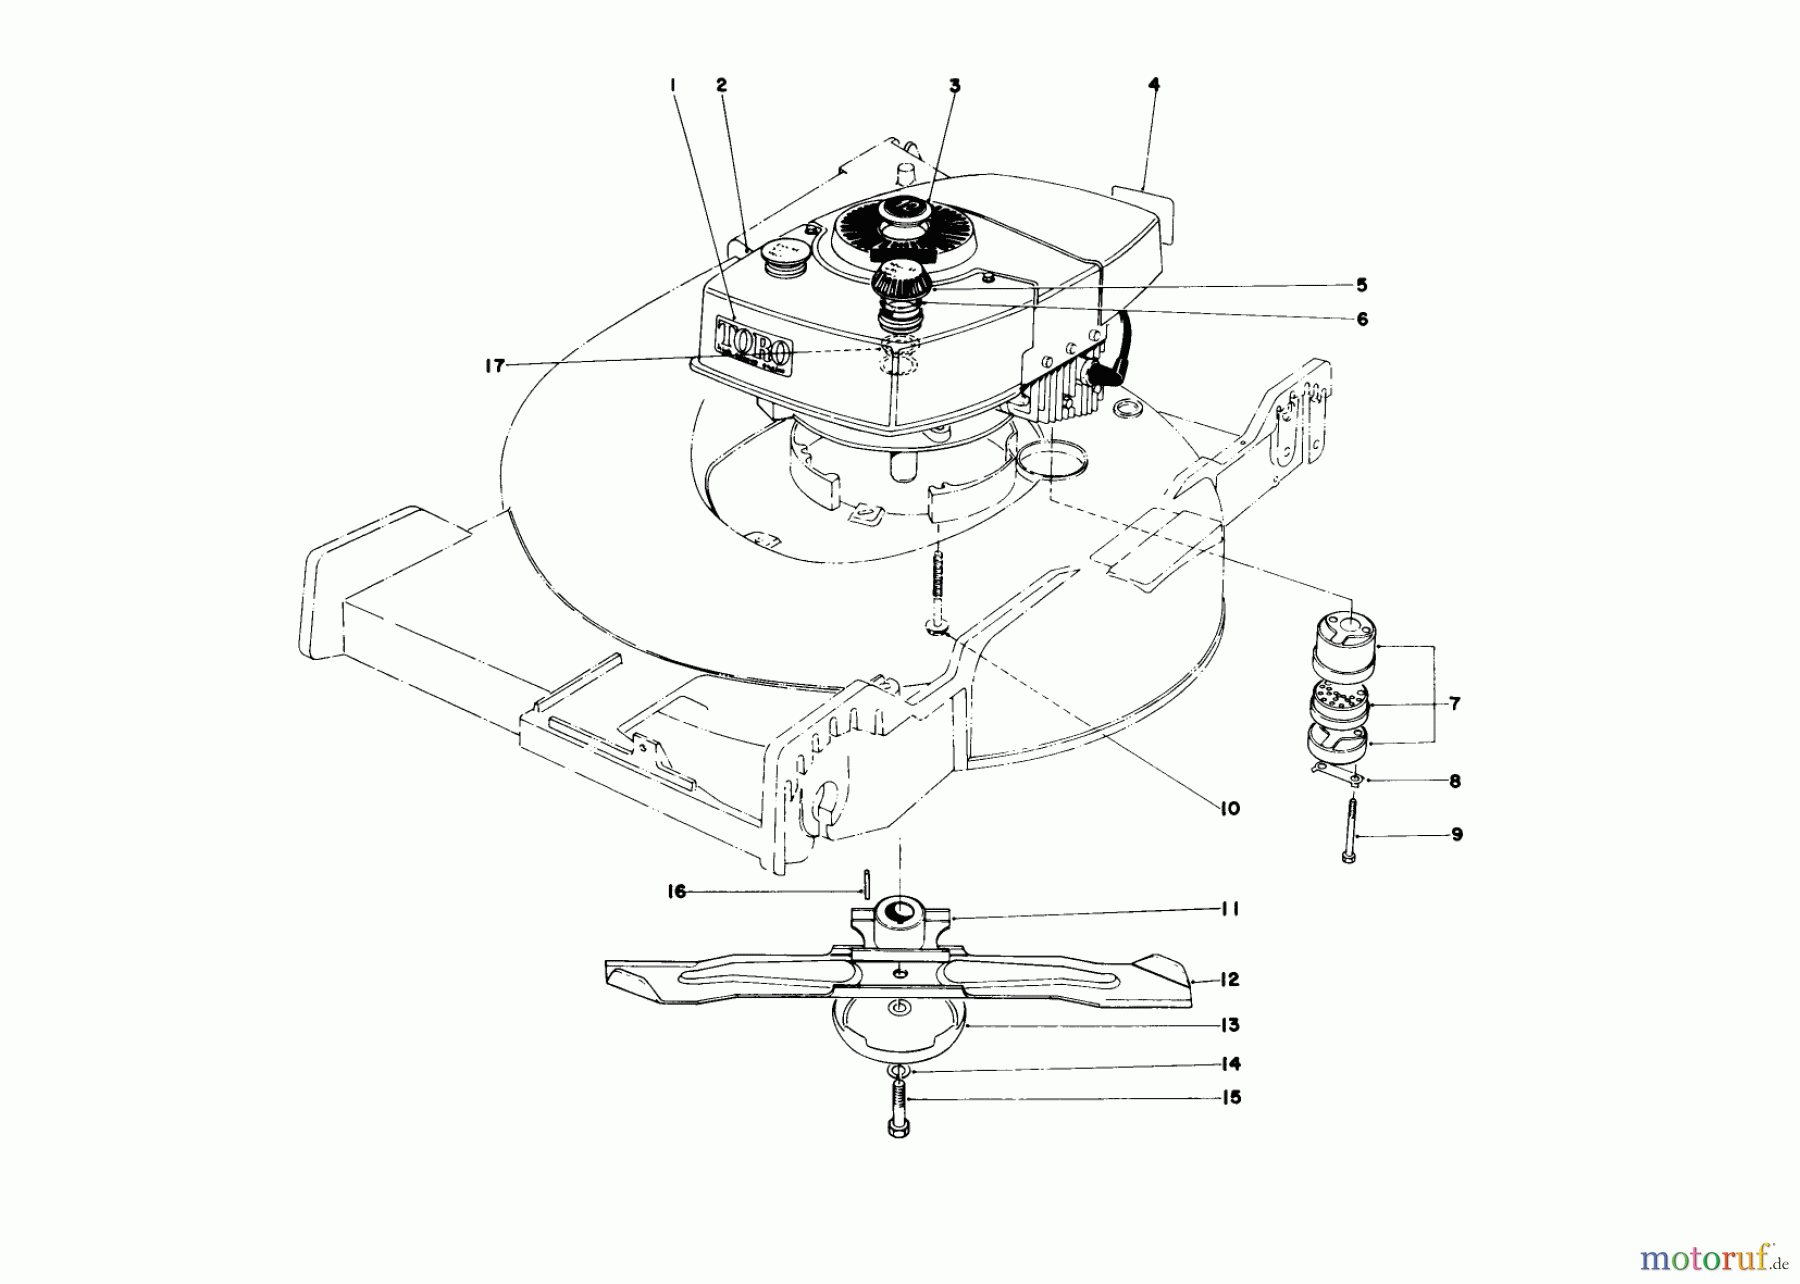  Toro Neu Mowers, Walk-Behind Seite 1 20456 - Toro Lawnmower, 1976 (6000001-6999999) ENGINE ASSEMBLY